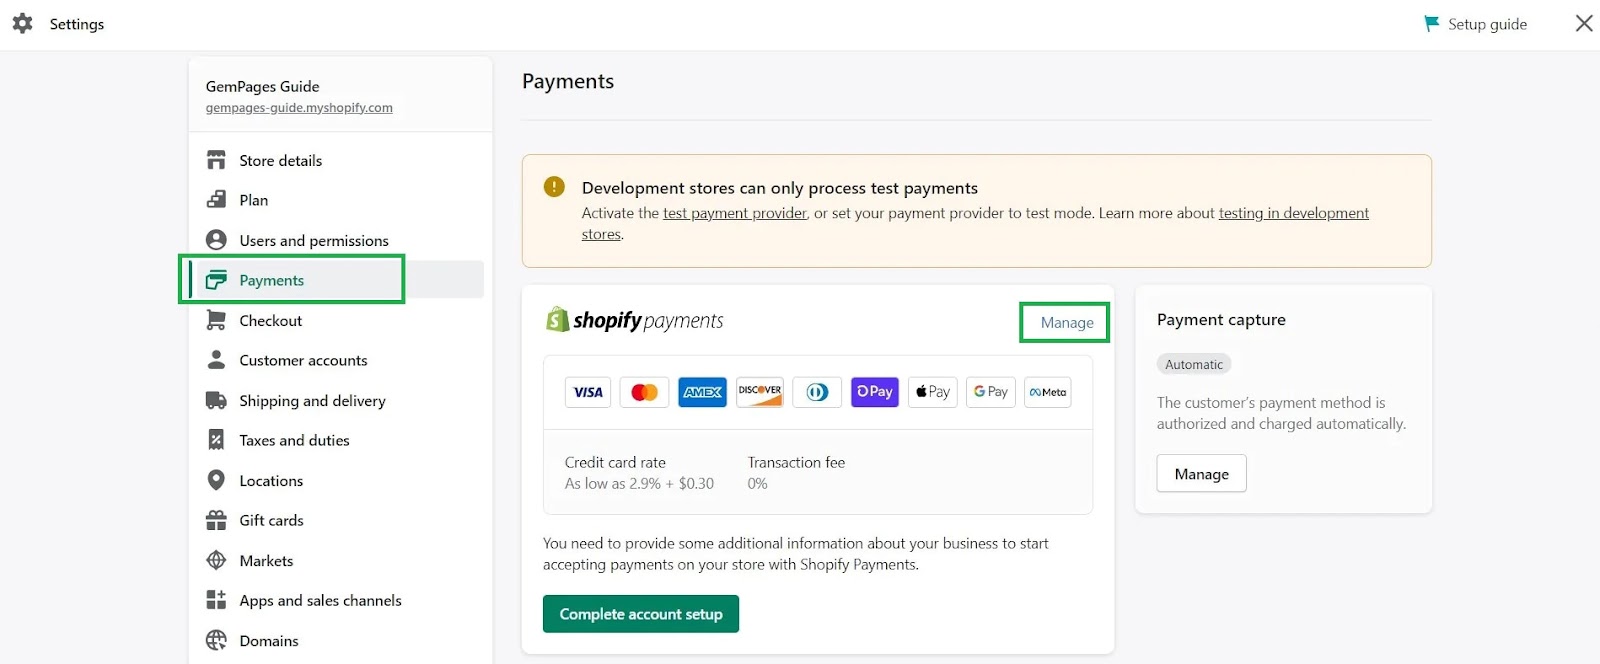 Siapkan Pembayaran Toko di Shopify - DSers